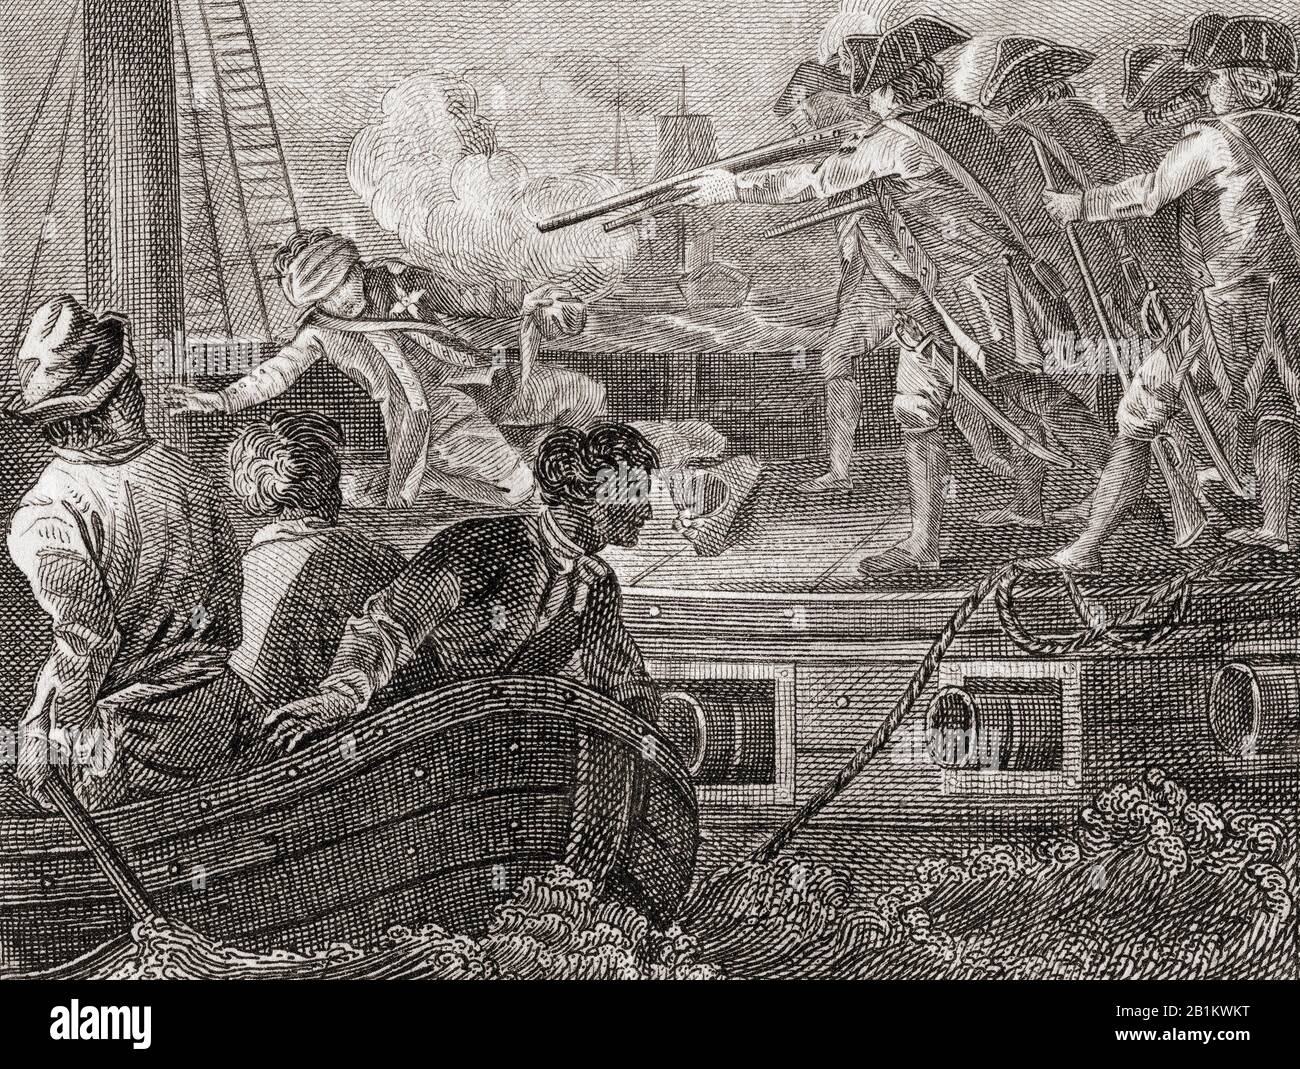 Die Hinrichtung von Admiral Byng. Admiral John Byng, 1704 - 1757. Offizier der Royal Navy, der vor Gericht durch den Beschuss von Kadertrupps entsetzt und hingerichtet wurde. Aus Der Geschichte Englands, von den ersten Aufzeichnungen bis zum Jahr 1802, veröffentlicht im Jahre 1812. Stockfoto